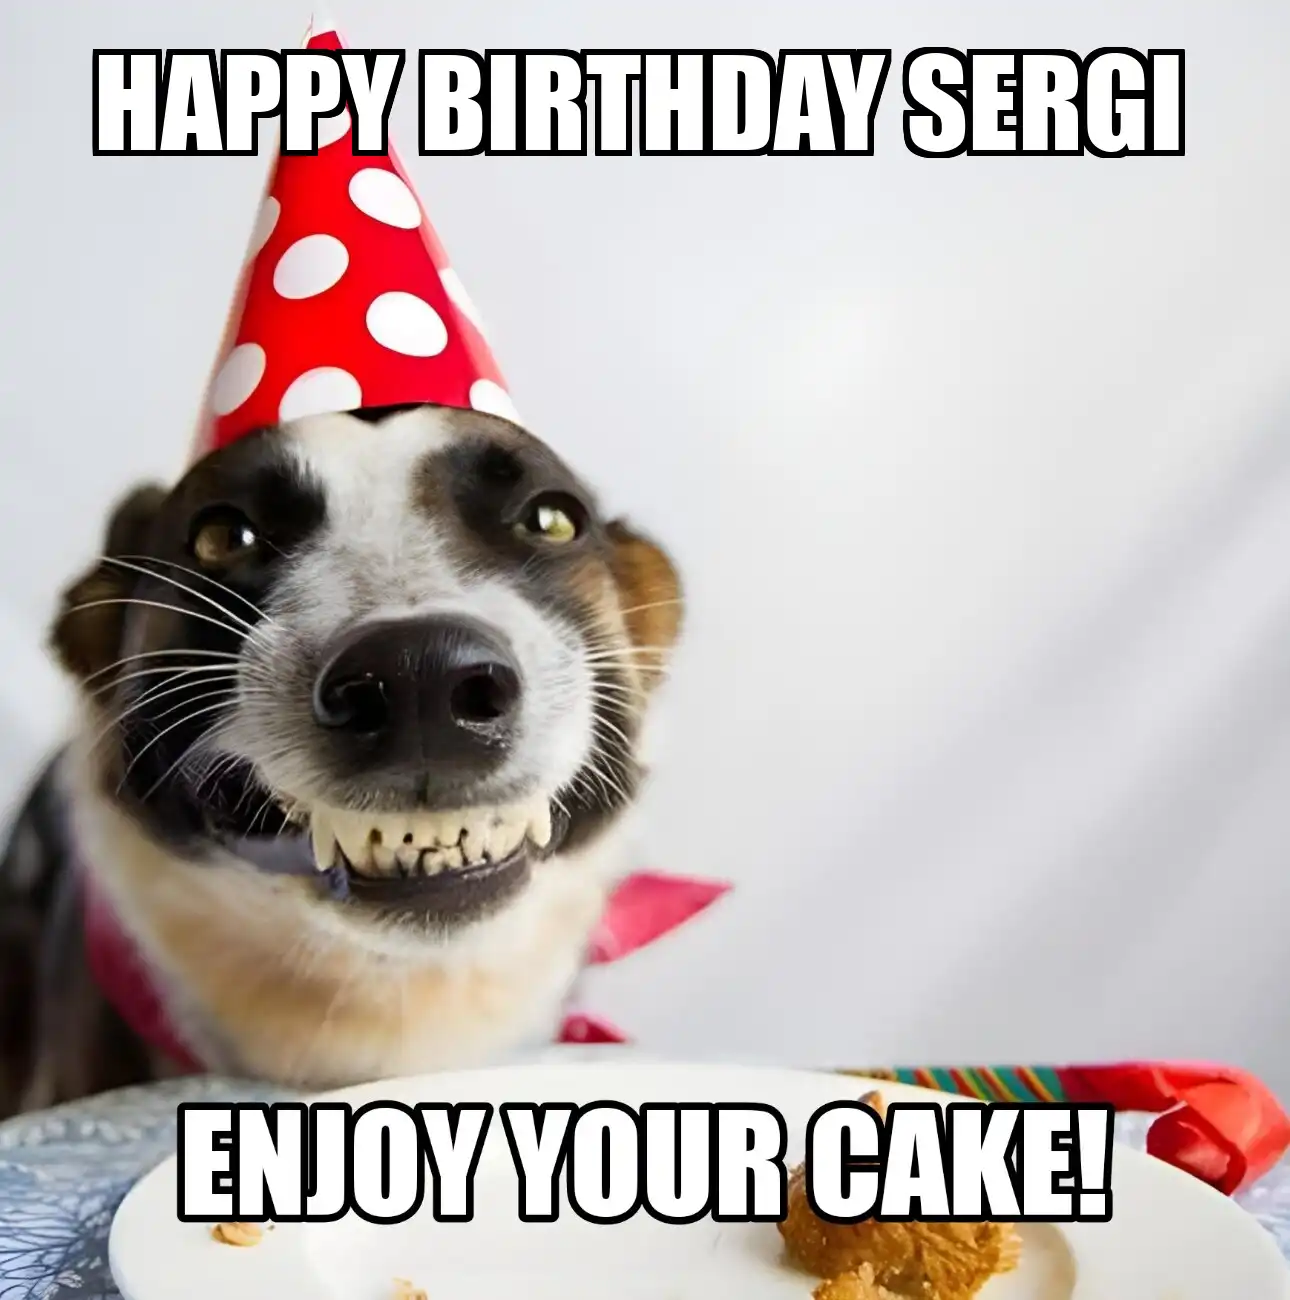 Happy Birthday Sergi Enjoy Your Cake Dog Meme